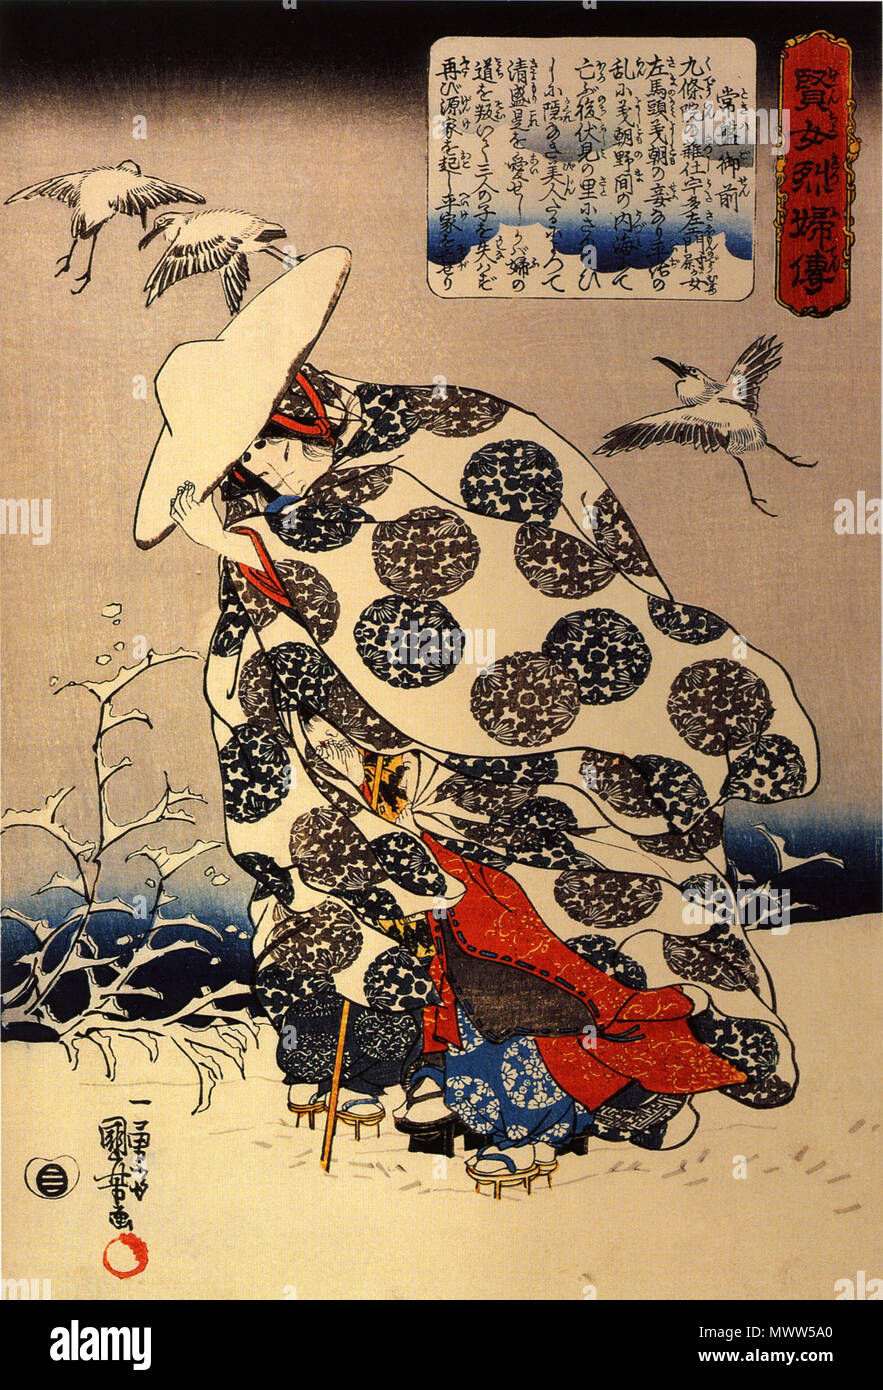 . Inglese: Tokiwa Gozen in fuga con i suoi figli attraverso la neve . Questa selezione è da storie di saggi e donne virtuose questa stampa illustra Tokiwa Gozen celebrato per la sua sorprendente bellezza. Lei era la moglie di Minamoto Yoshitomo e madre di tre figli. circa 1845. Utagawa Kuniyoshi (1798-1861) nomi alternativi descrizione Ichiyusai giapponese ukiyo-e l'artista pittore e incisore Data di nascita e morte 1 Gennaio 1798 14 aprile 1861 Luogo di nascita e morte di Nihonbashi, Edo Tokyo oggi sede di lavoro Edo, oggi Autorità di Tokyo controllo : Q317736 VIAF: 32791569 ISNI: 0000 0001 Foto Stock